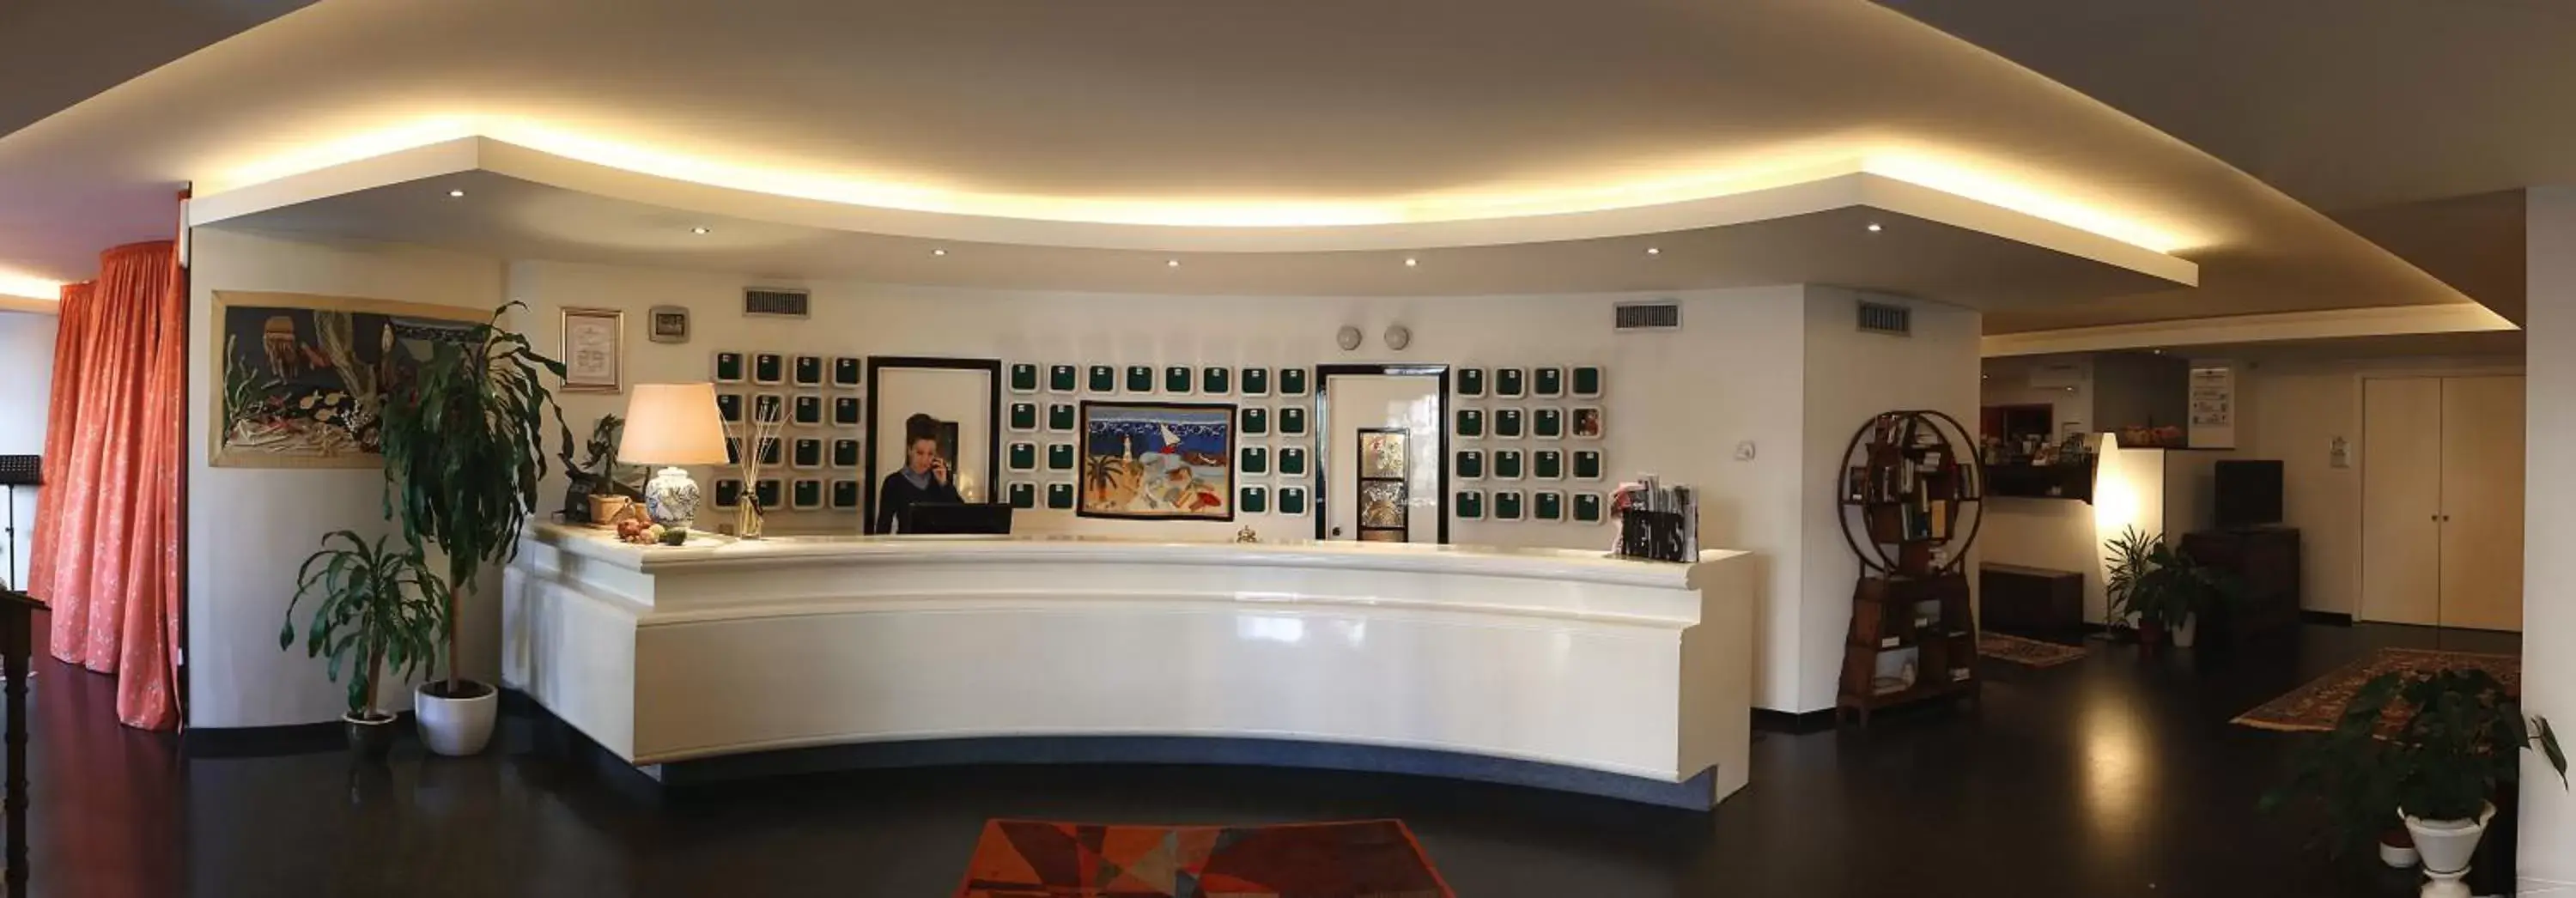 Lobby or reception in Hotel International